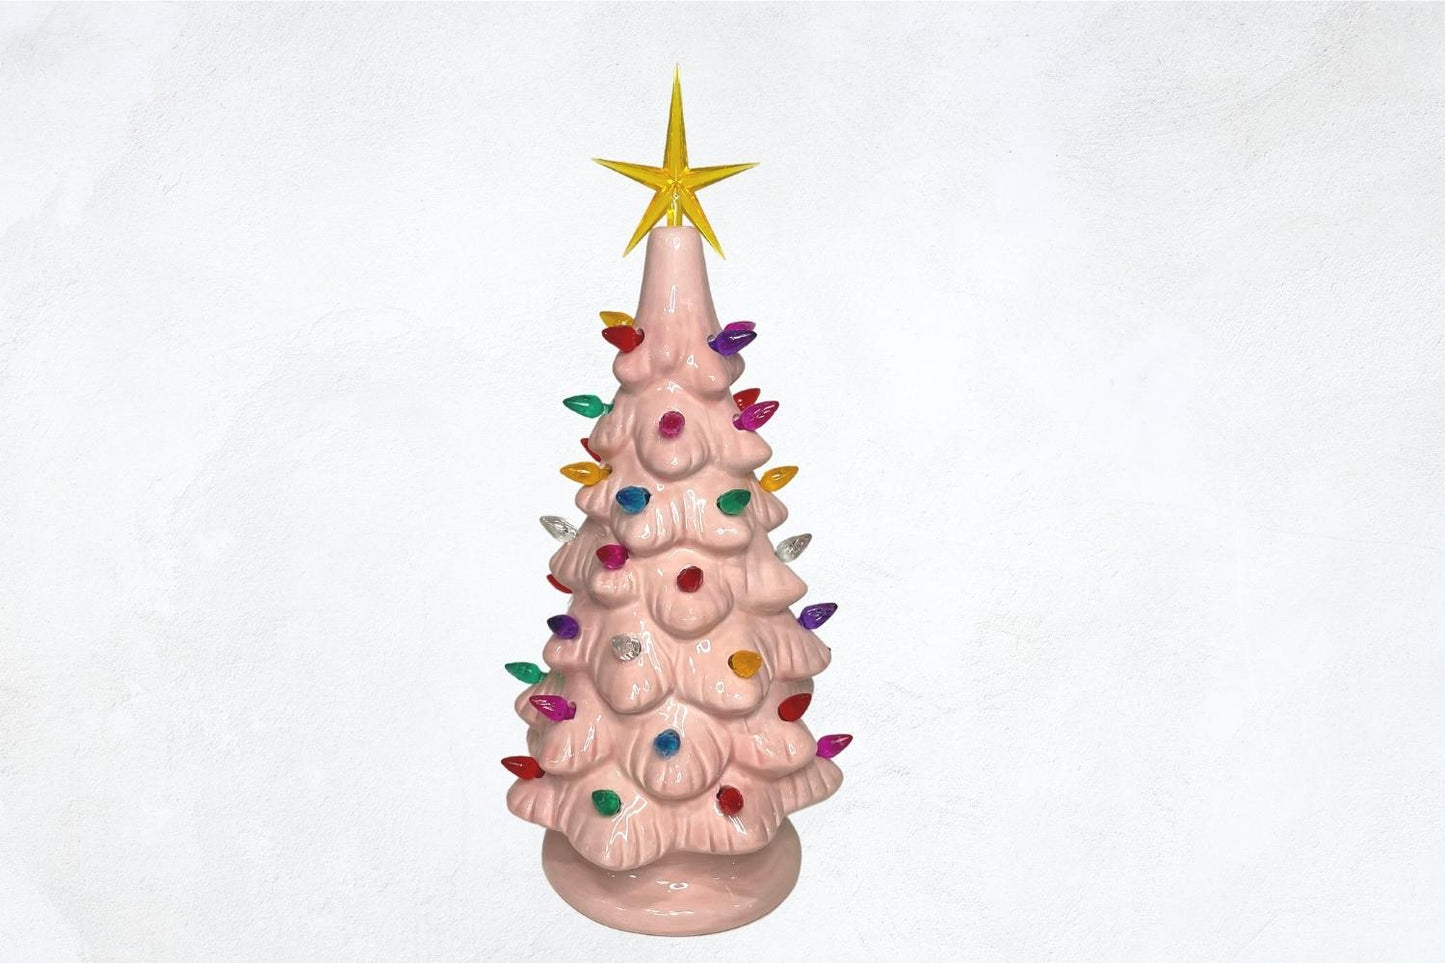 Pink Lighted Vintage Christmas Tree - Medium